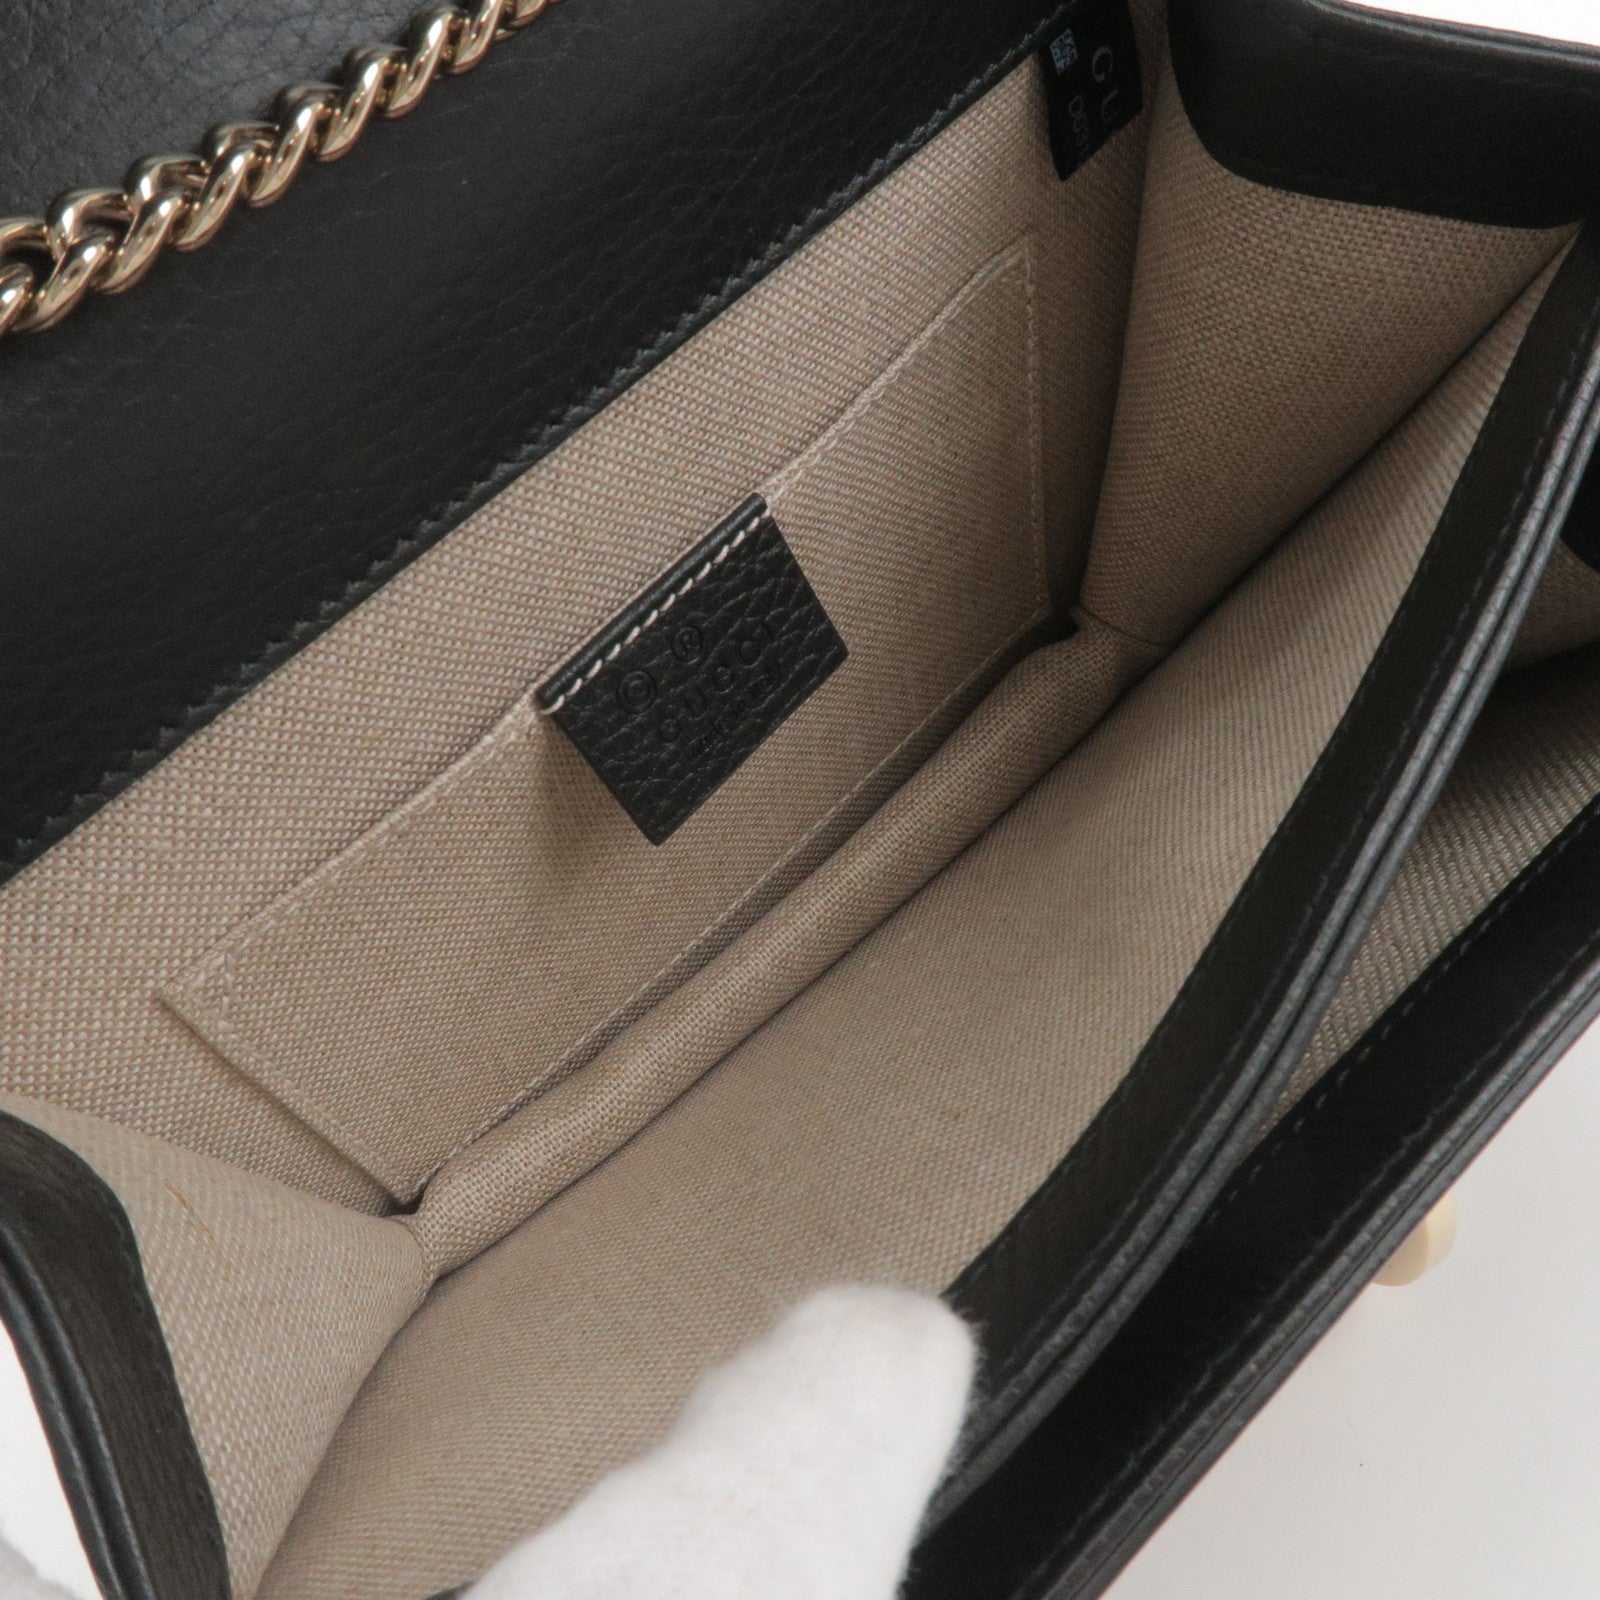 Gucci Interlocking Shoulder Bag Black